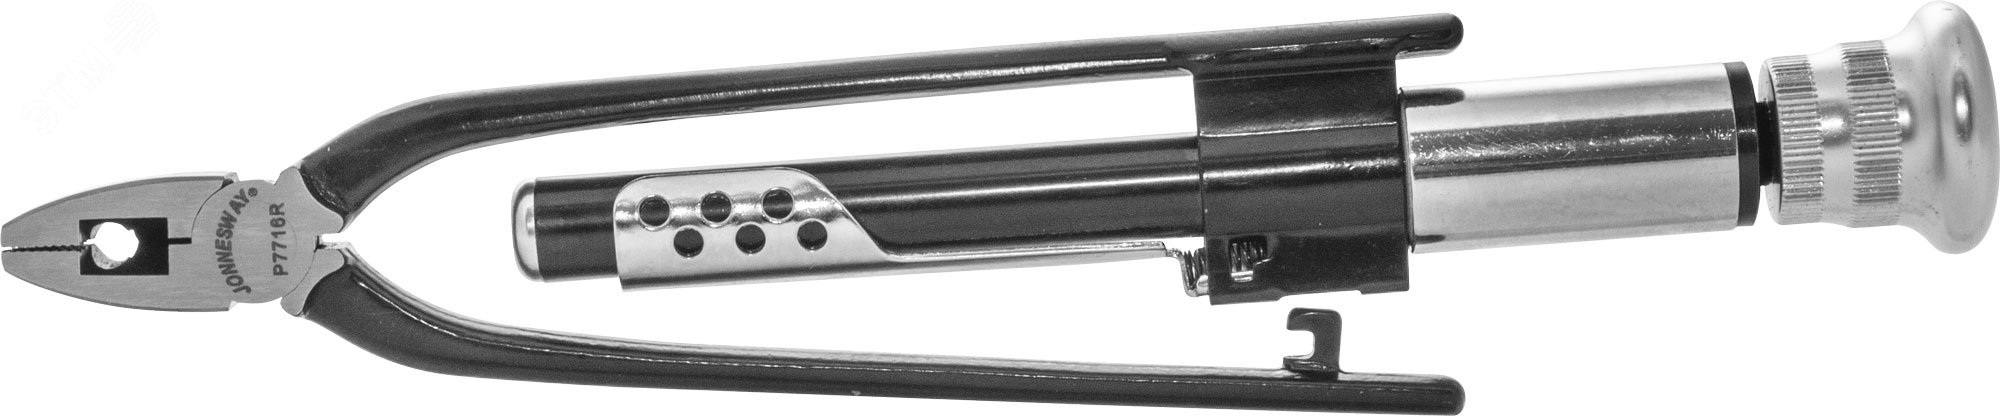 Плоскогубцы для скручивания проволоки с реверсом (твистеры), 160 мм Jonnesway P7716R - фото